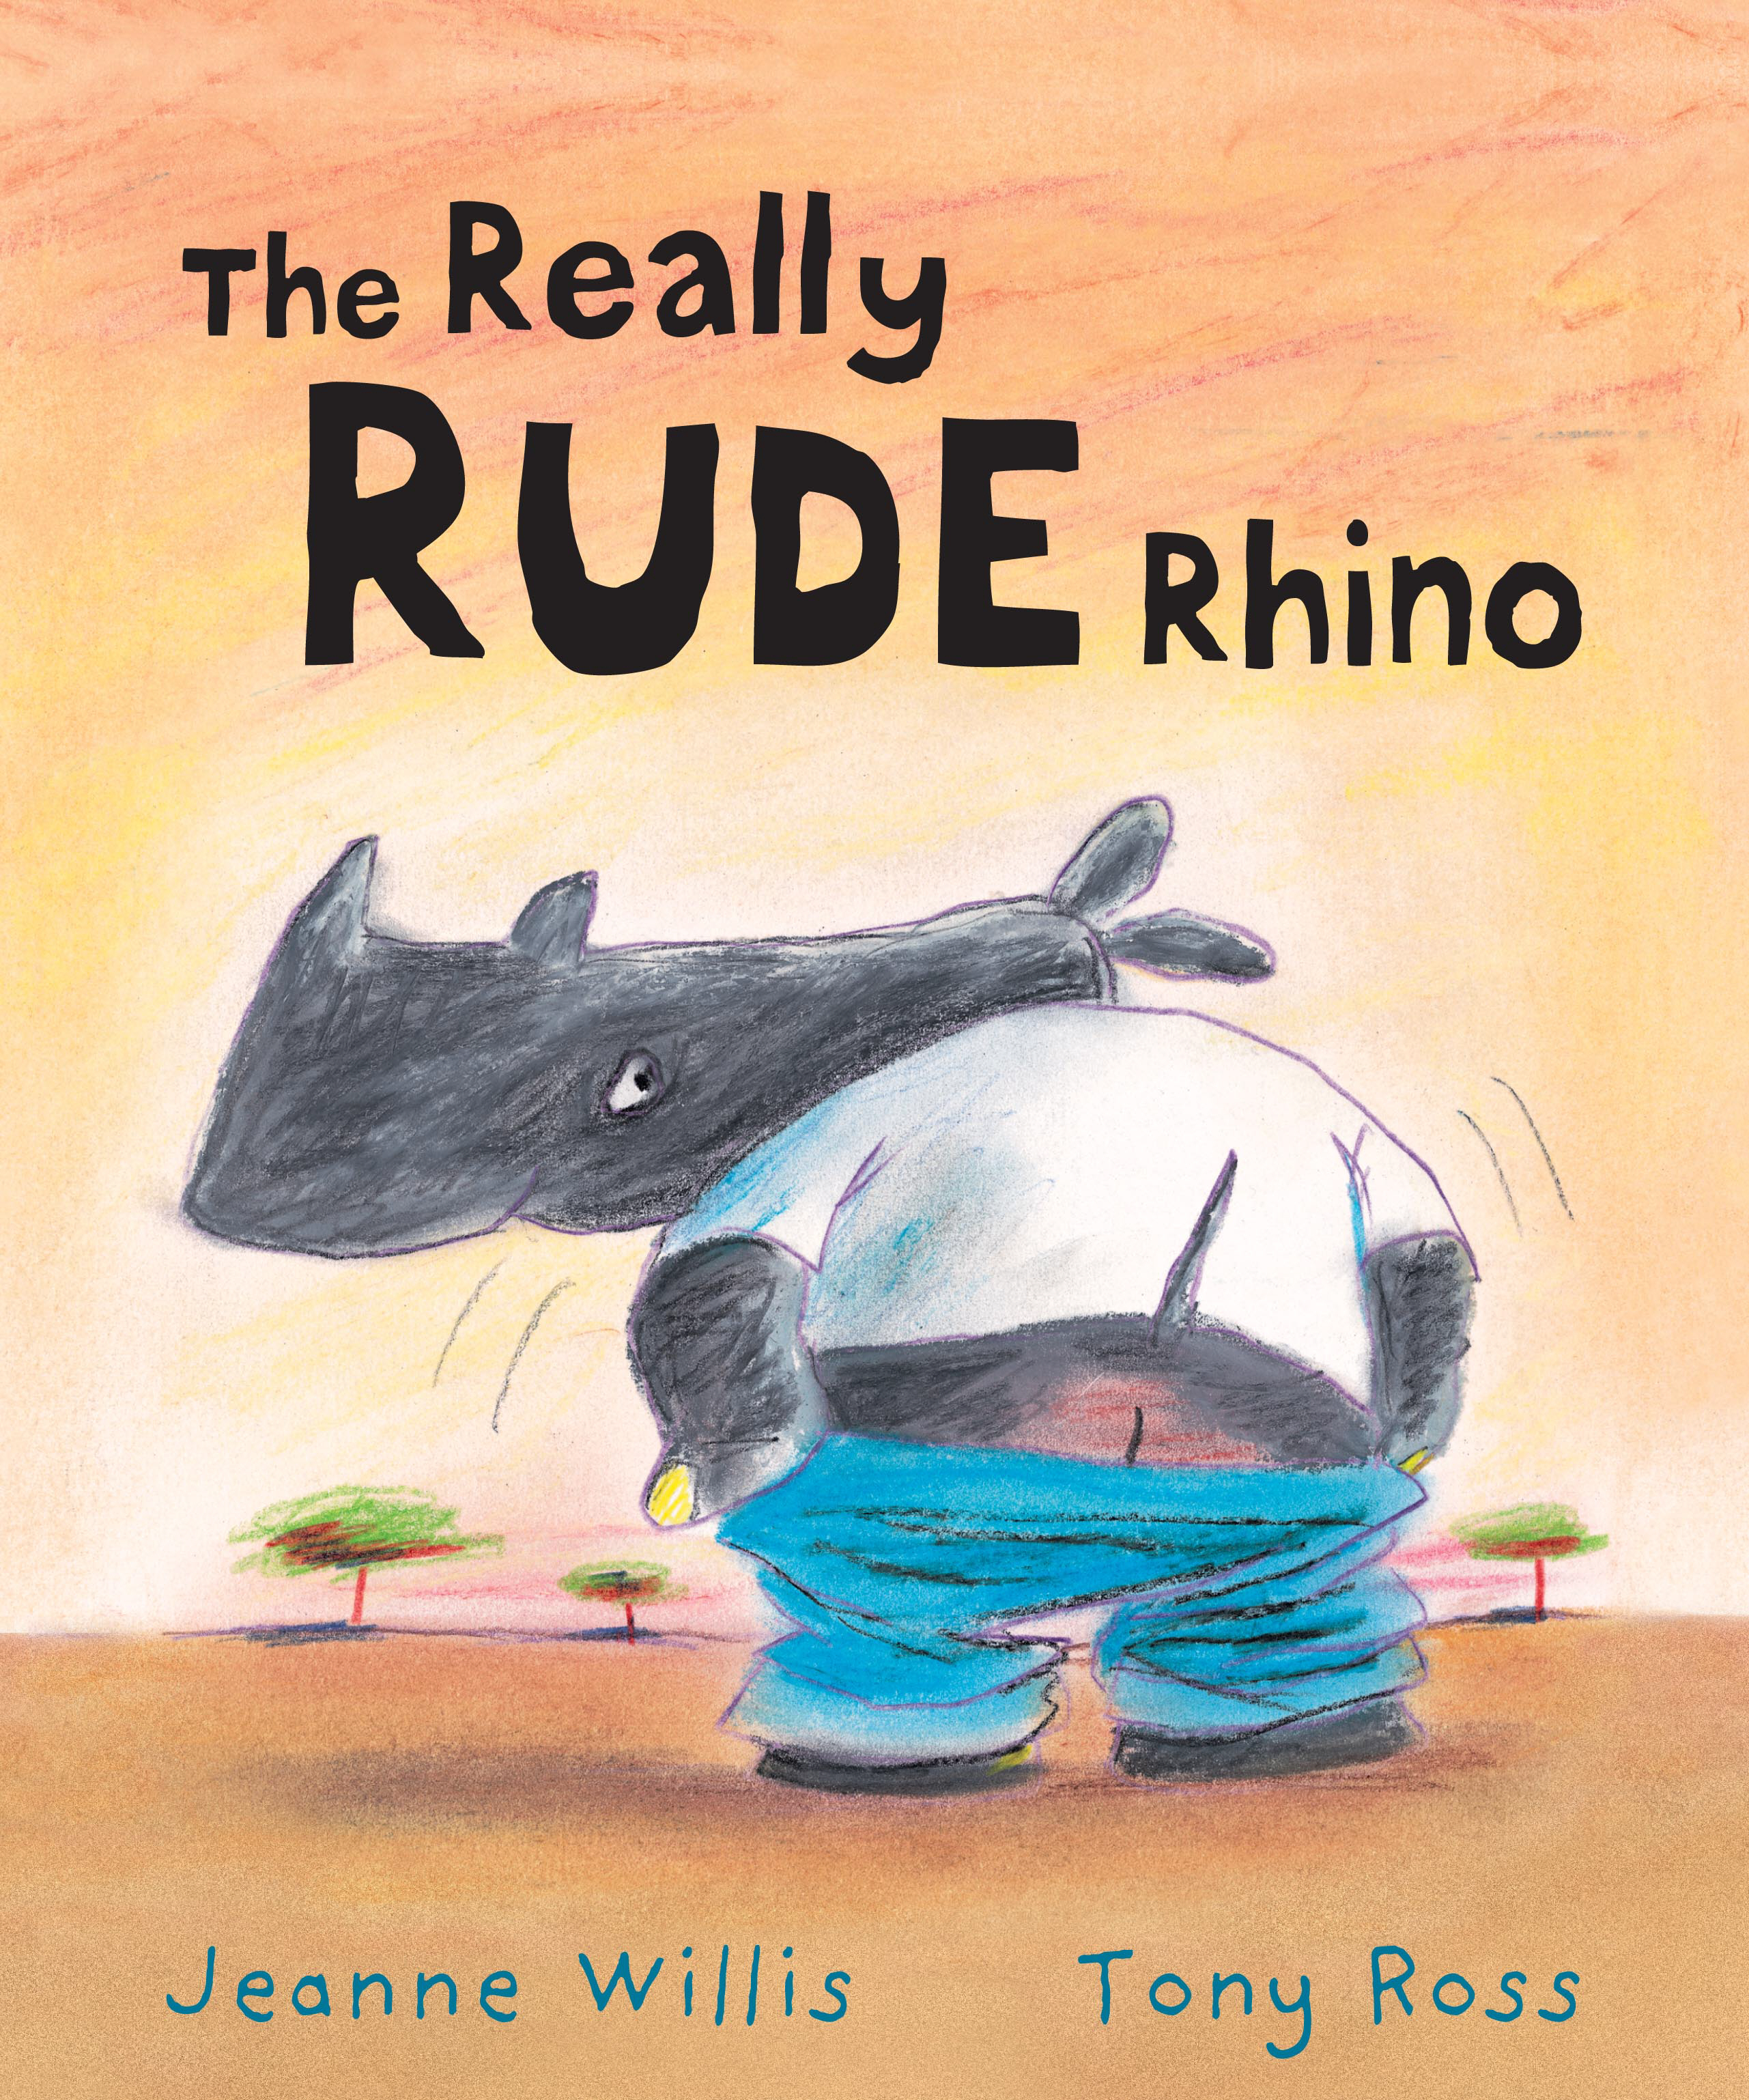 The Really Rude Rhino